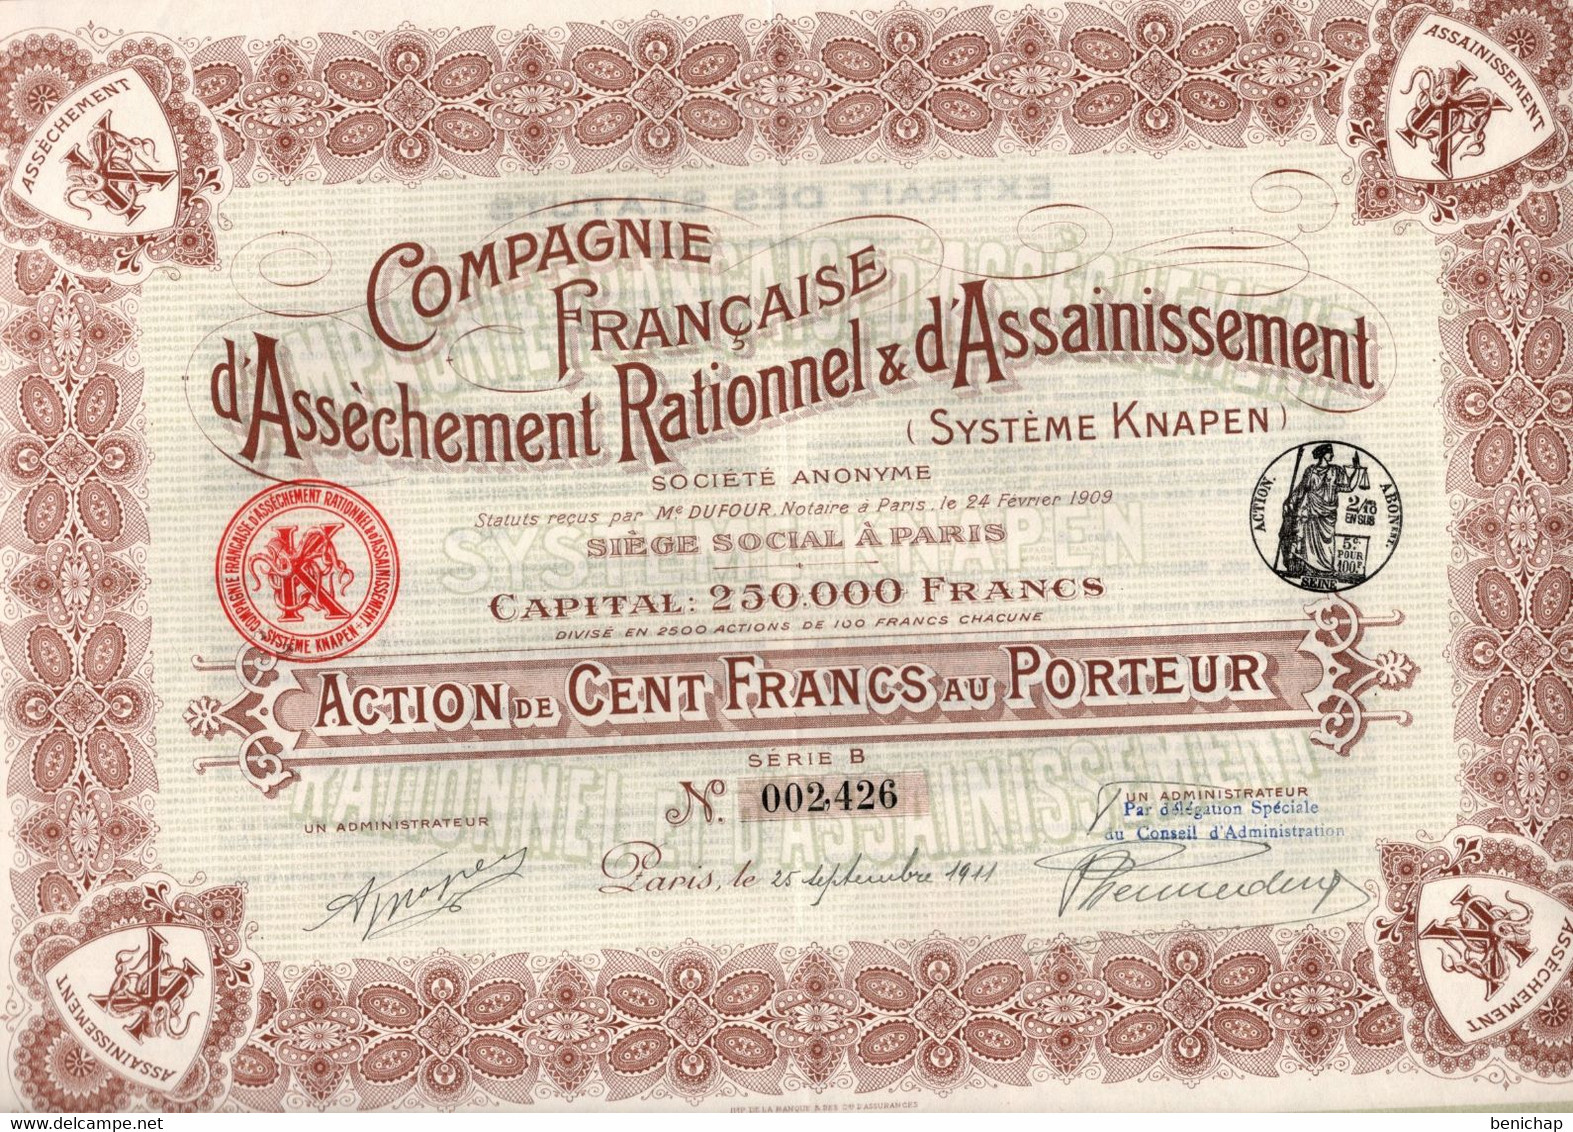 Action De 100 Frcs Au Porteur - Compagnie Française D'Assèchement Rationnel & D'Assainissement Knapen - Paris 1911 - Wasser